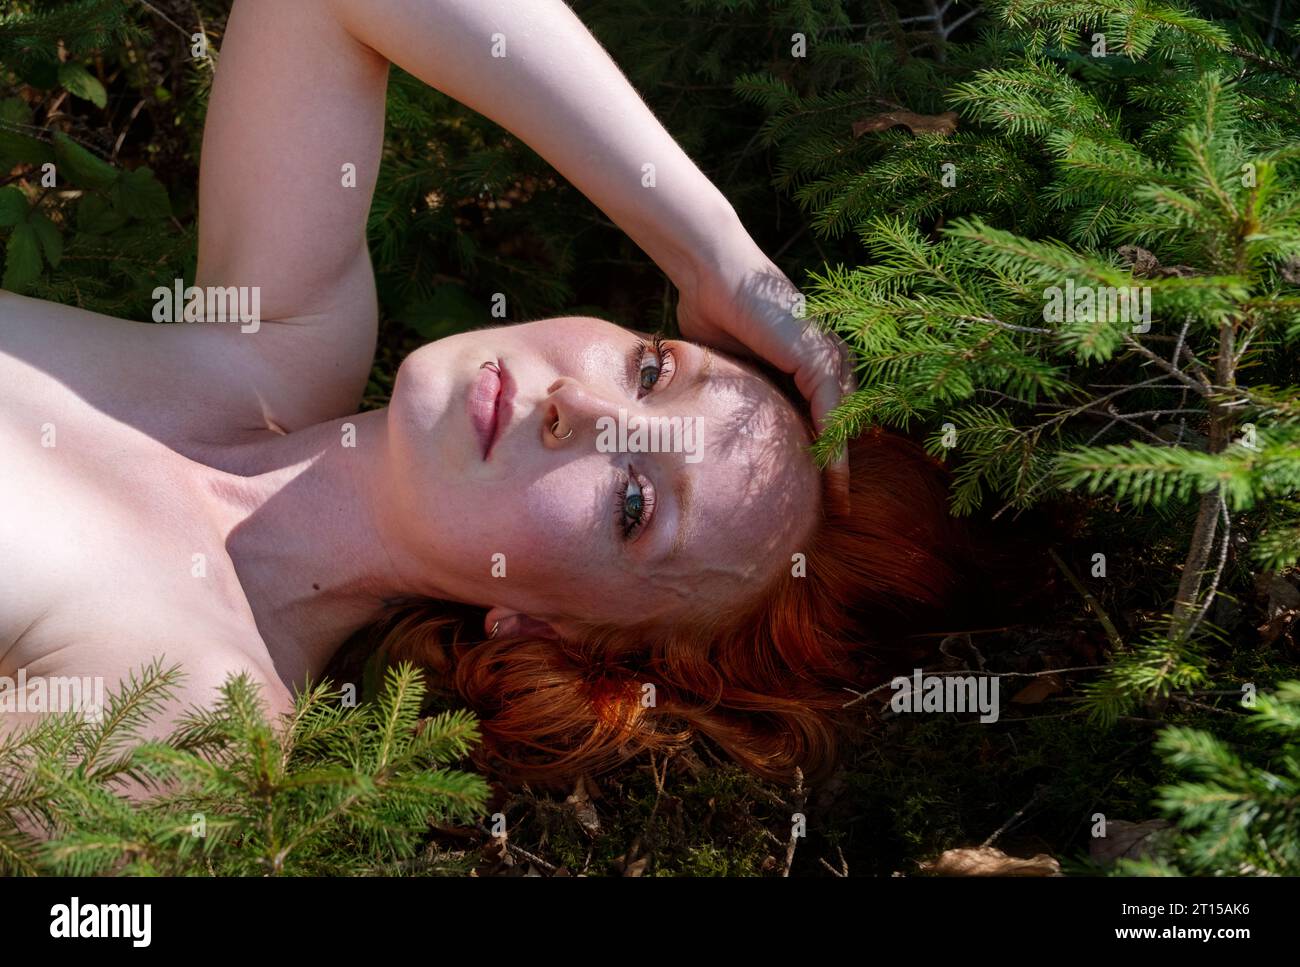 ritratto di una giovane donna rossa nuda, sdraiata su un terreno boschivo tra piccoli alberi di abete i cui rami gettano bizzarre ombre sul suo bel viso Foto Stock